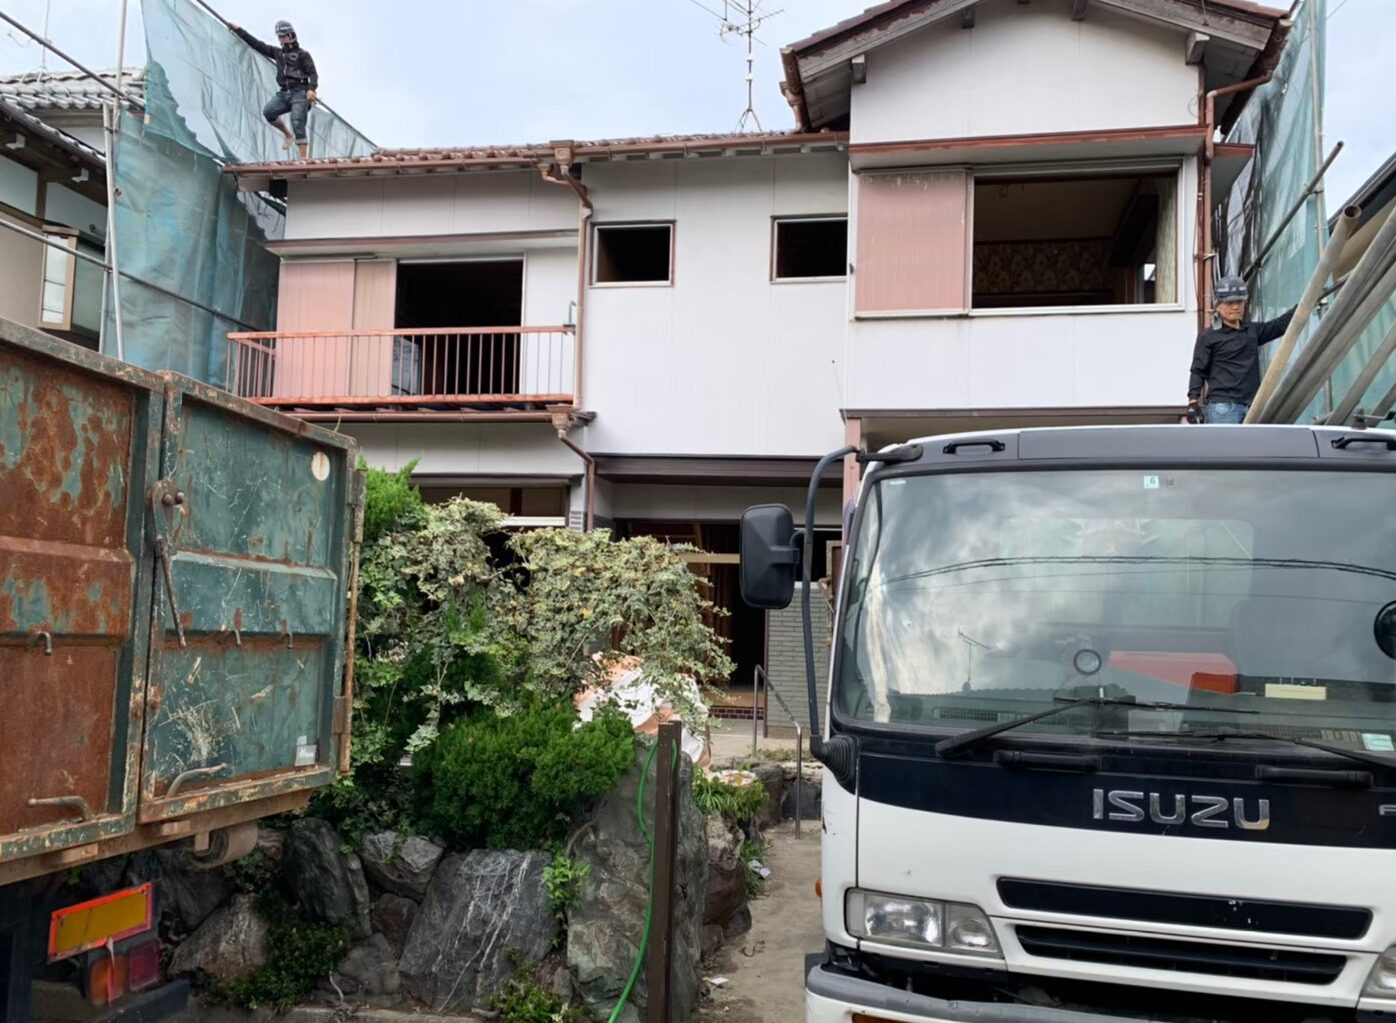 一戸建ての解体工事|愛知県大府市の戸建て住宅解体工事の施工実績 住んでいない家の解体・撤去作業を行いました。最後に整地作業してお引渡しとなります。 パートナーホーム株式会社|パートナーホーム